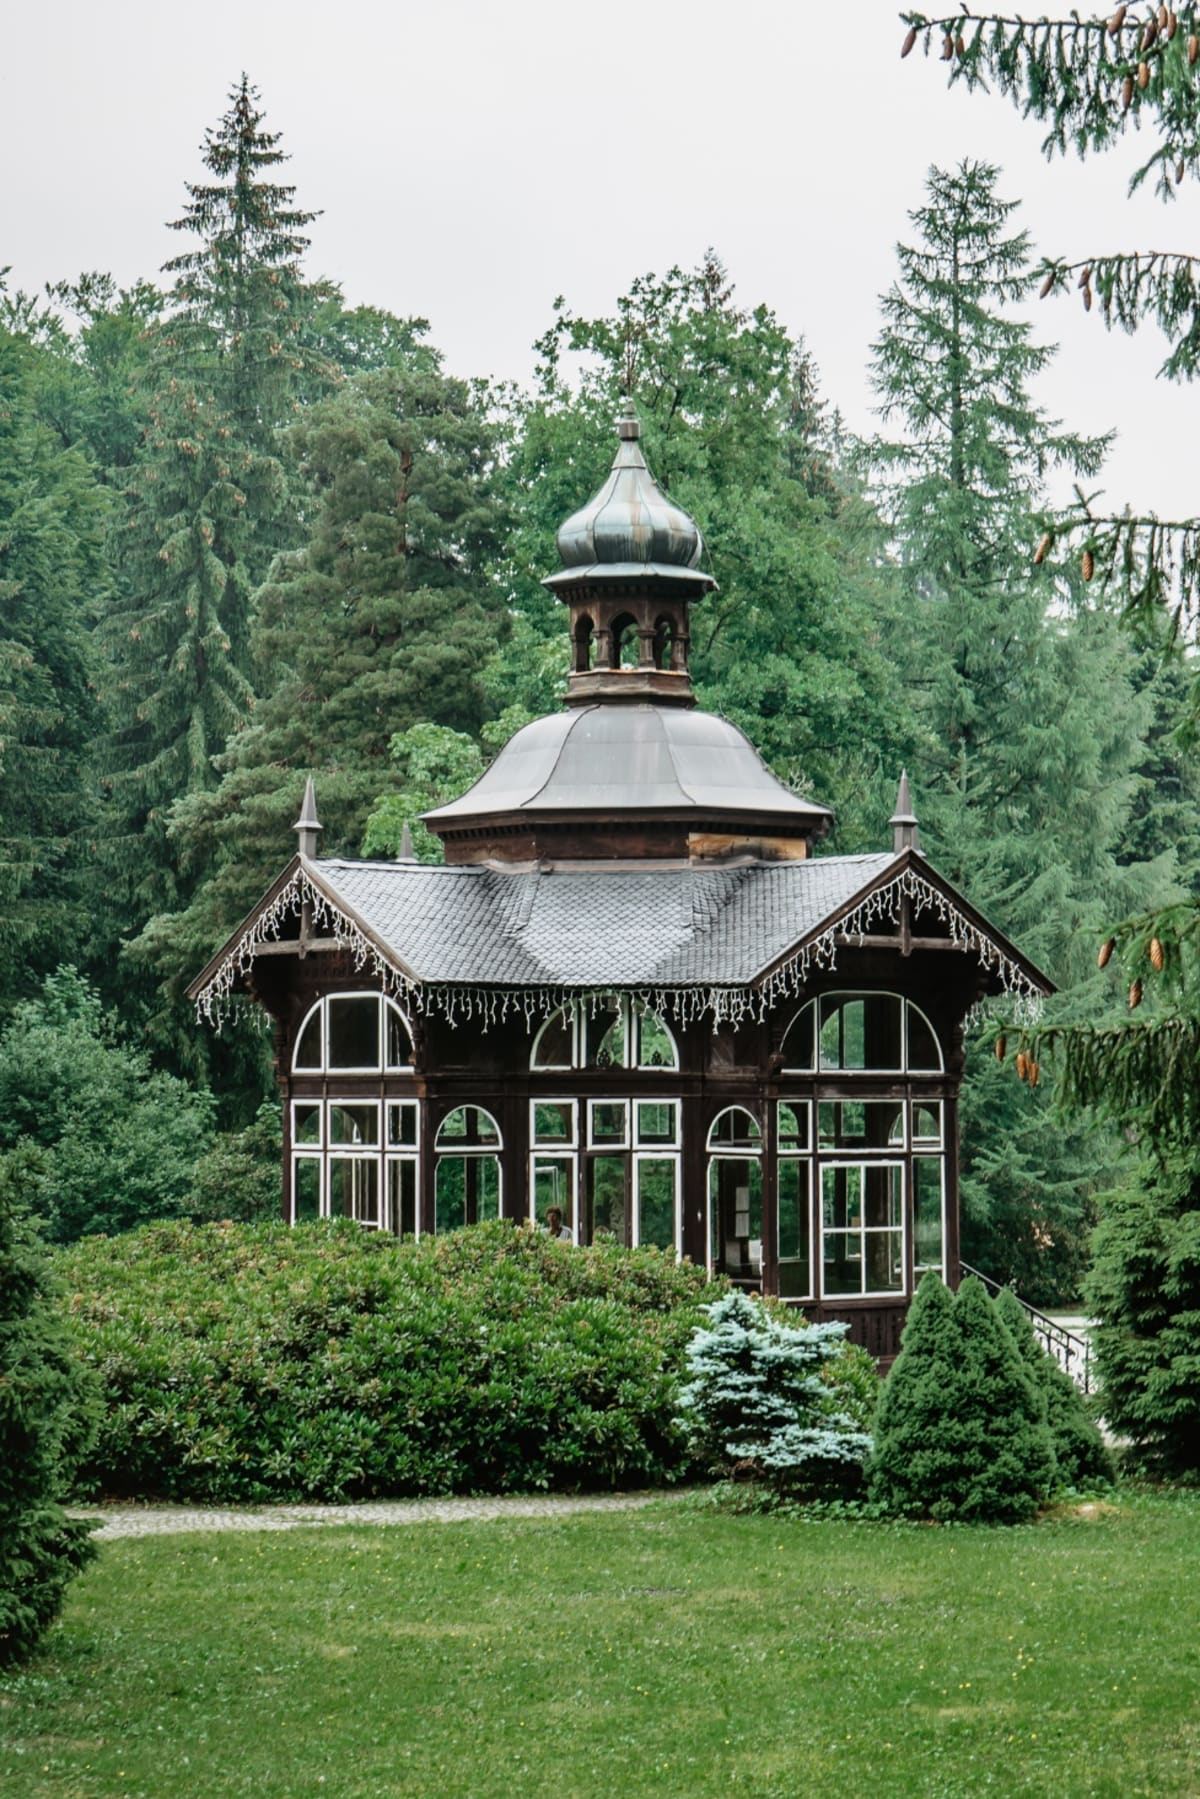 Dřevěný pitný pavilon byl postaven v roce 1862.